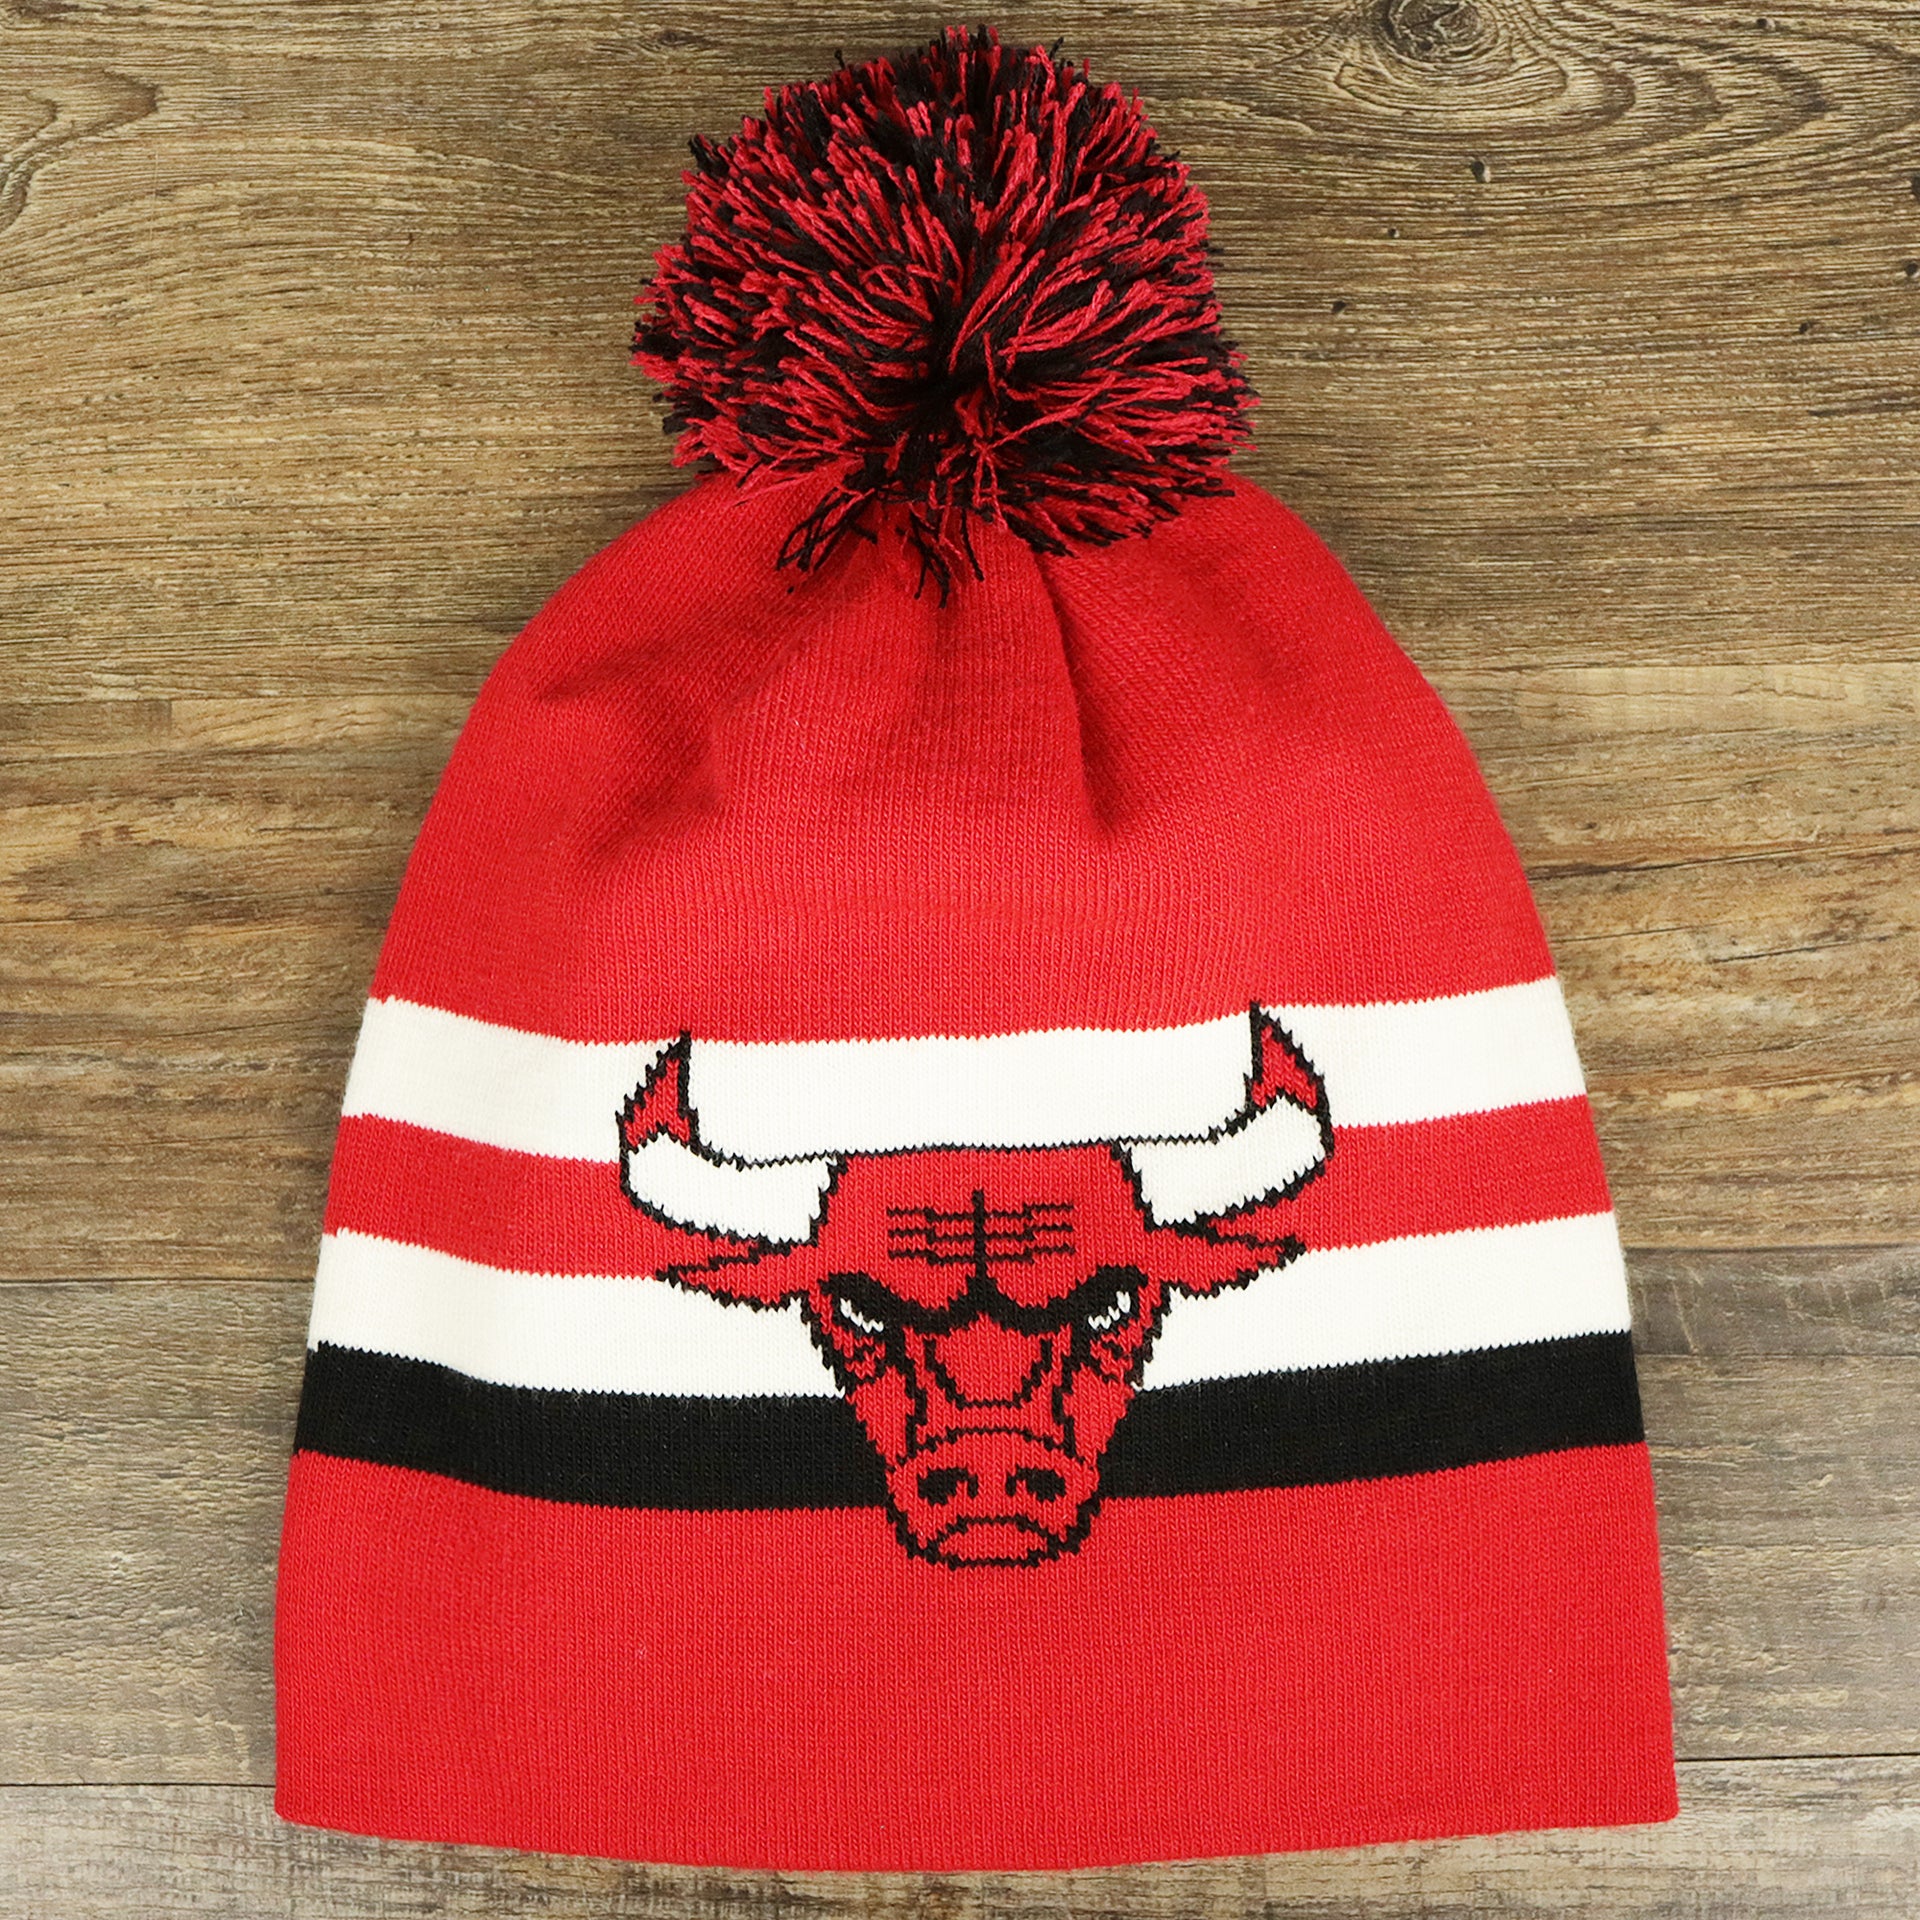 The Chicago Bulls Long Knit Cuffless NFL Winter Pom Pom Beanie | Red Pom Pom Beanie